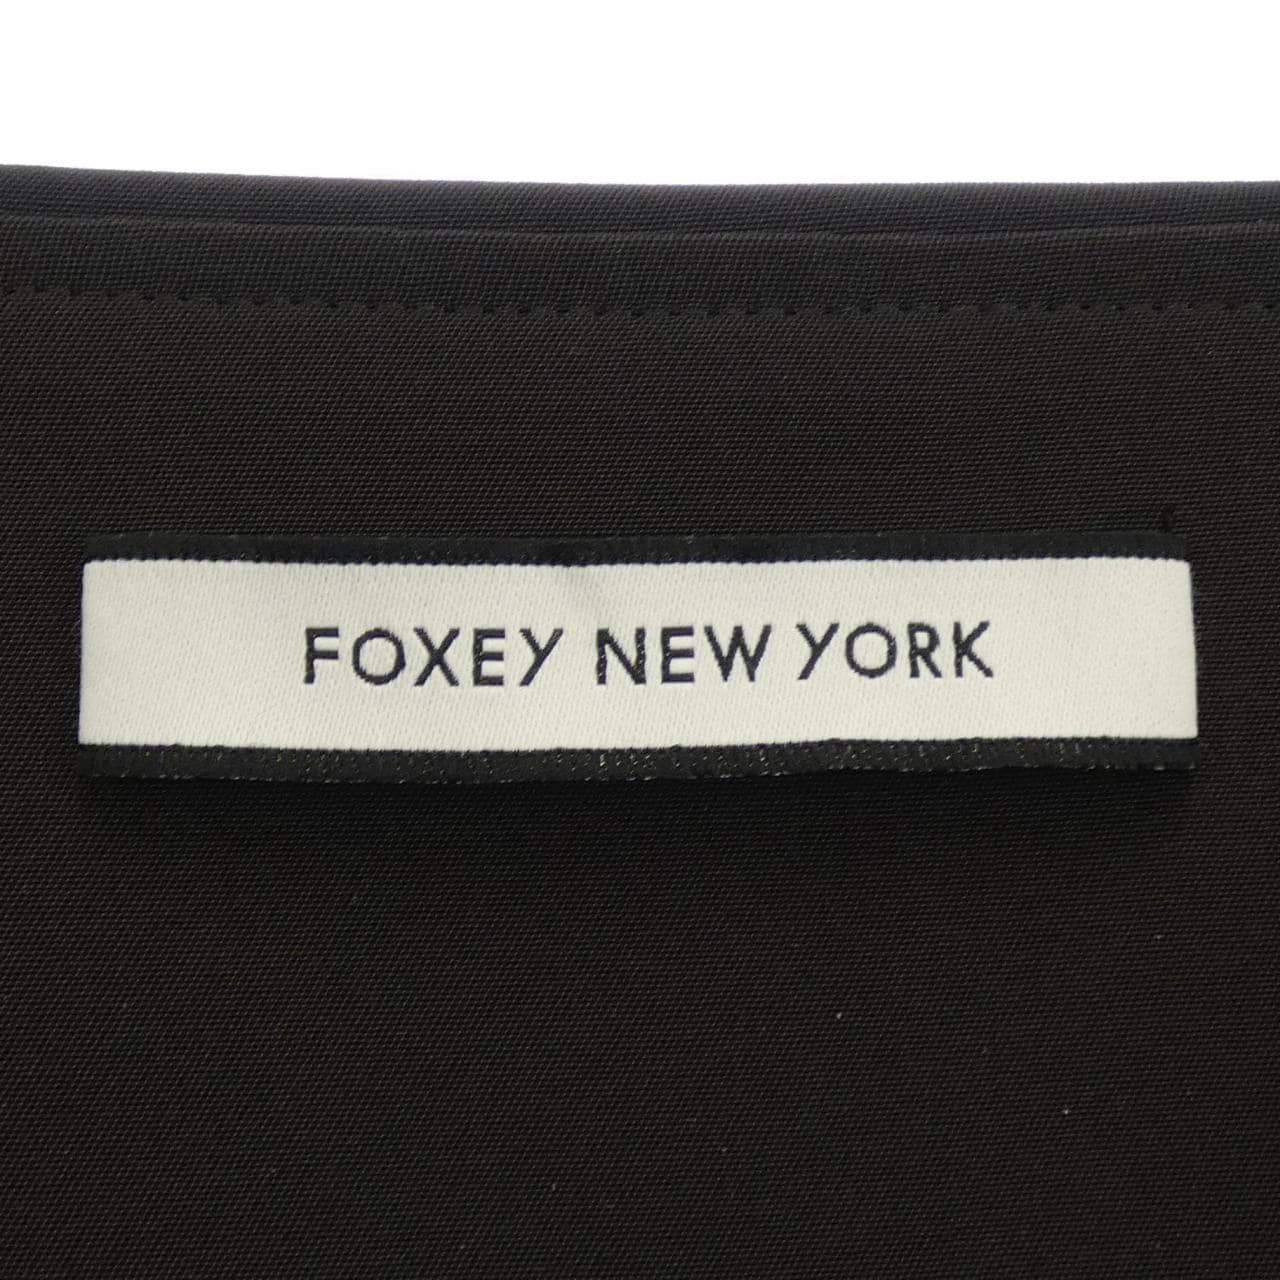 Foxy New York FOXEY NEW YORK coat